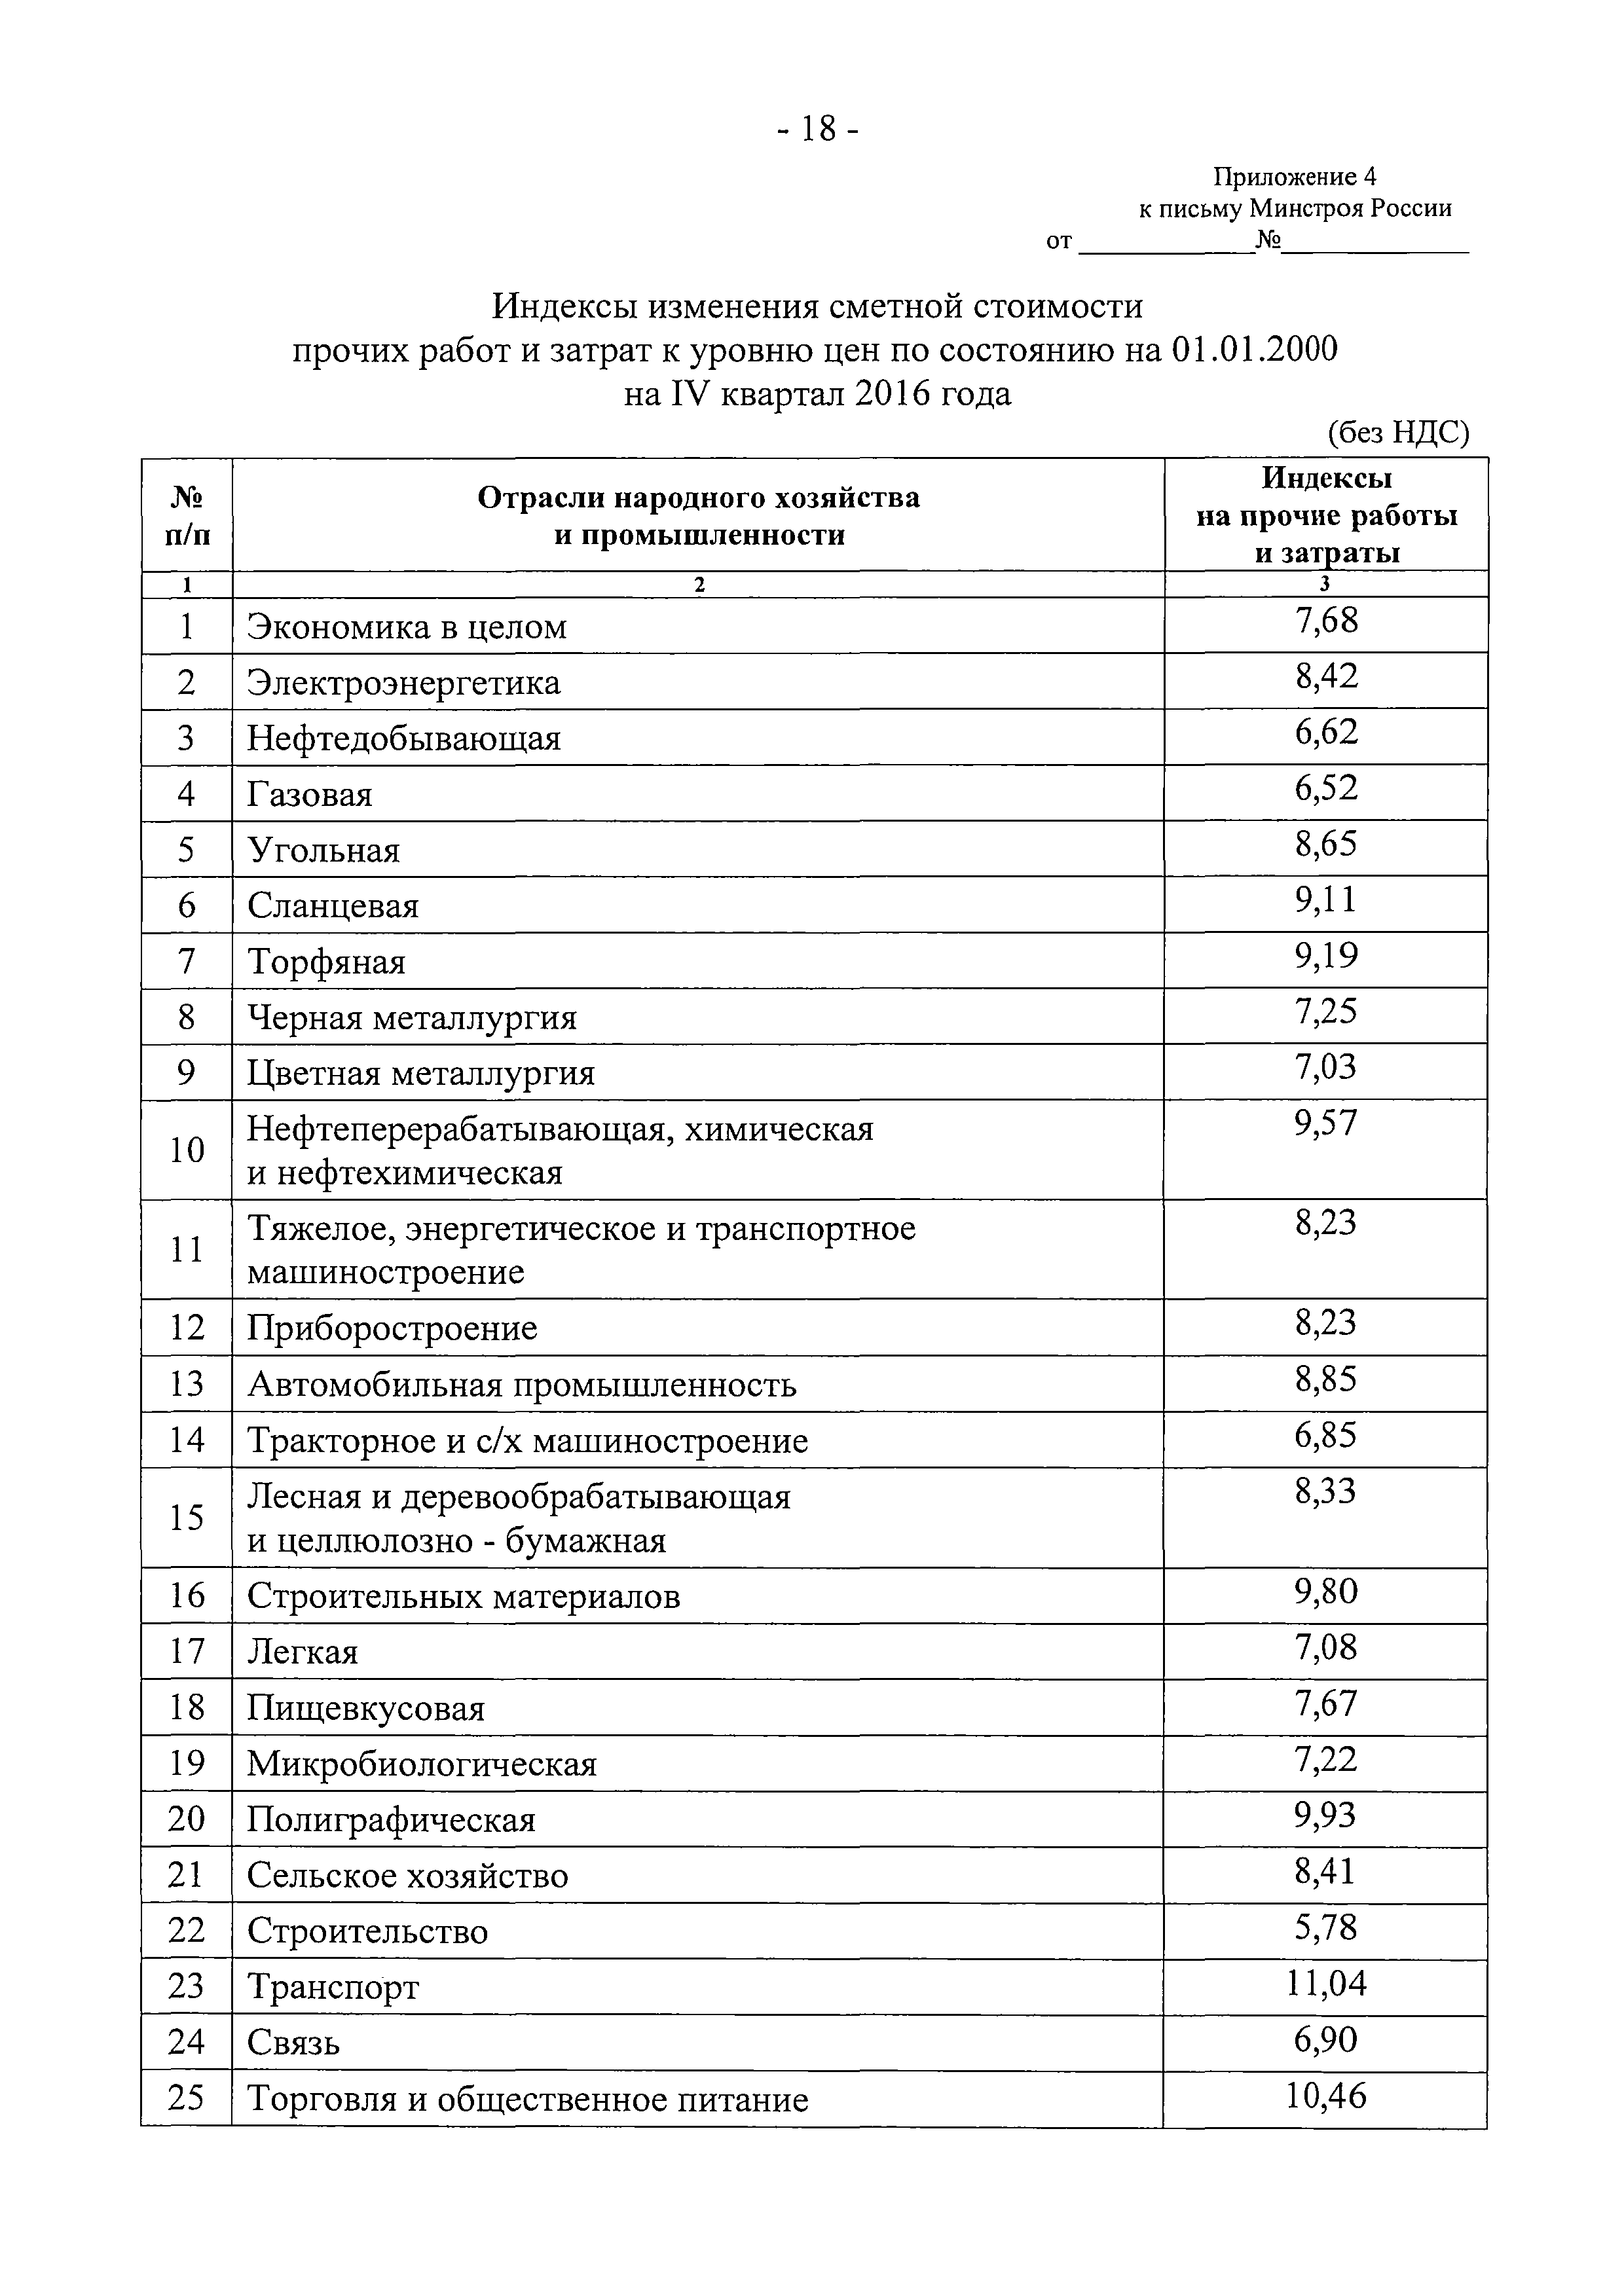 Инструкция по расчету индекса изменения сметной стоимости